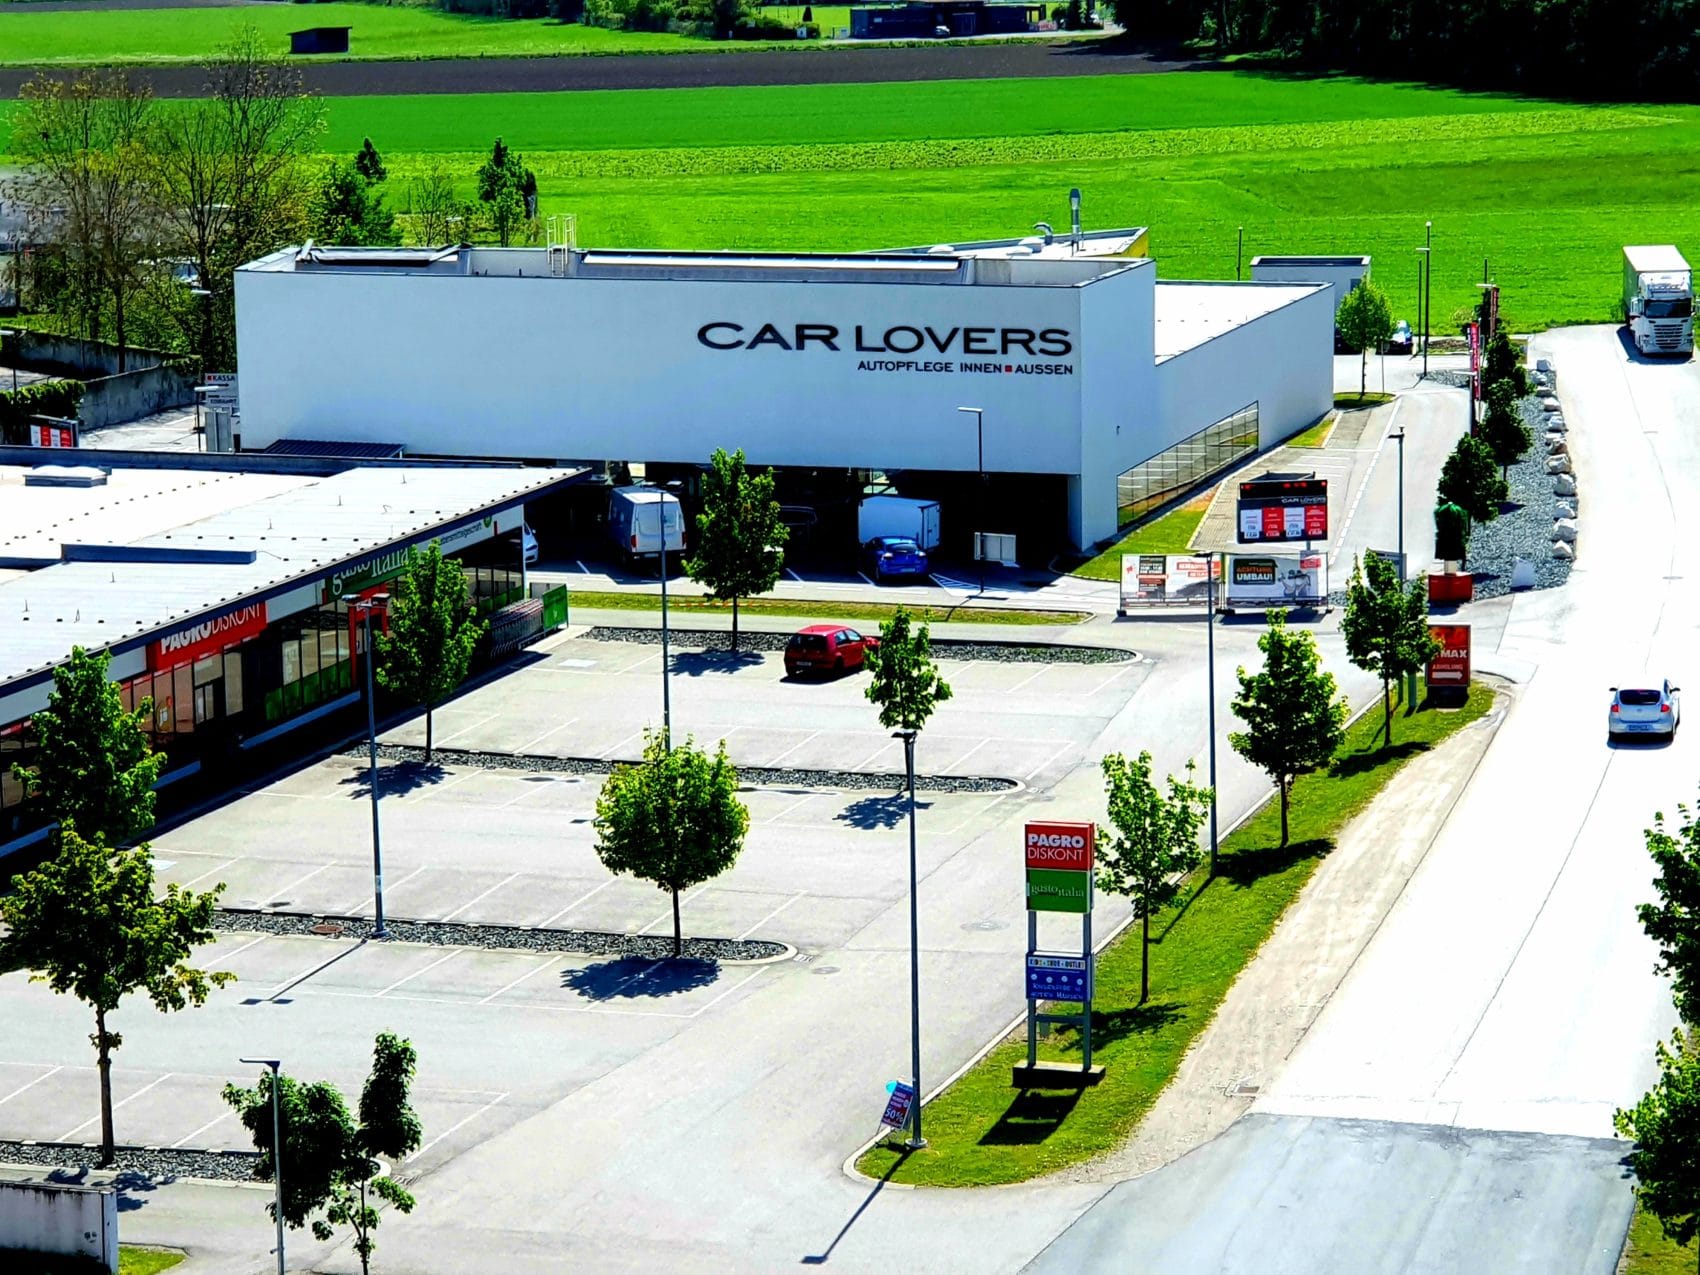 Bei den Carlovers wird dein Auto im Handumdrehen gereinigt. Der Standort in Klagenfurt zählt zu den modernsten Waschanlagen in ganz Österreich.